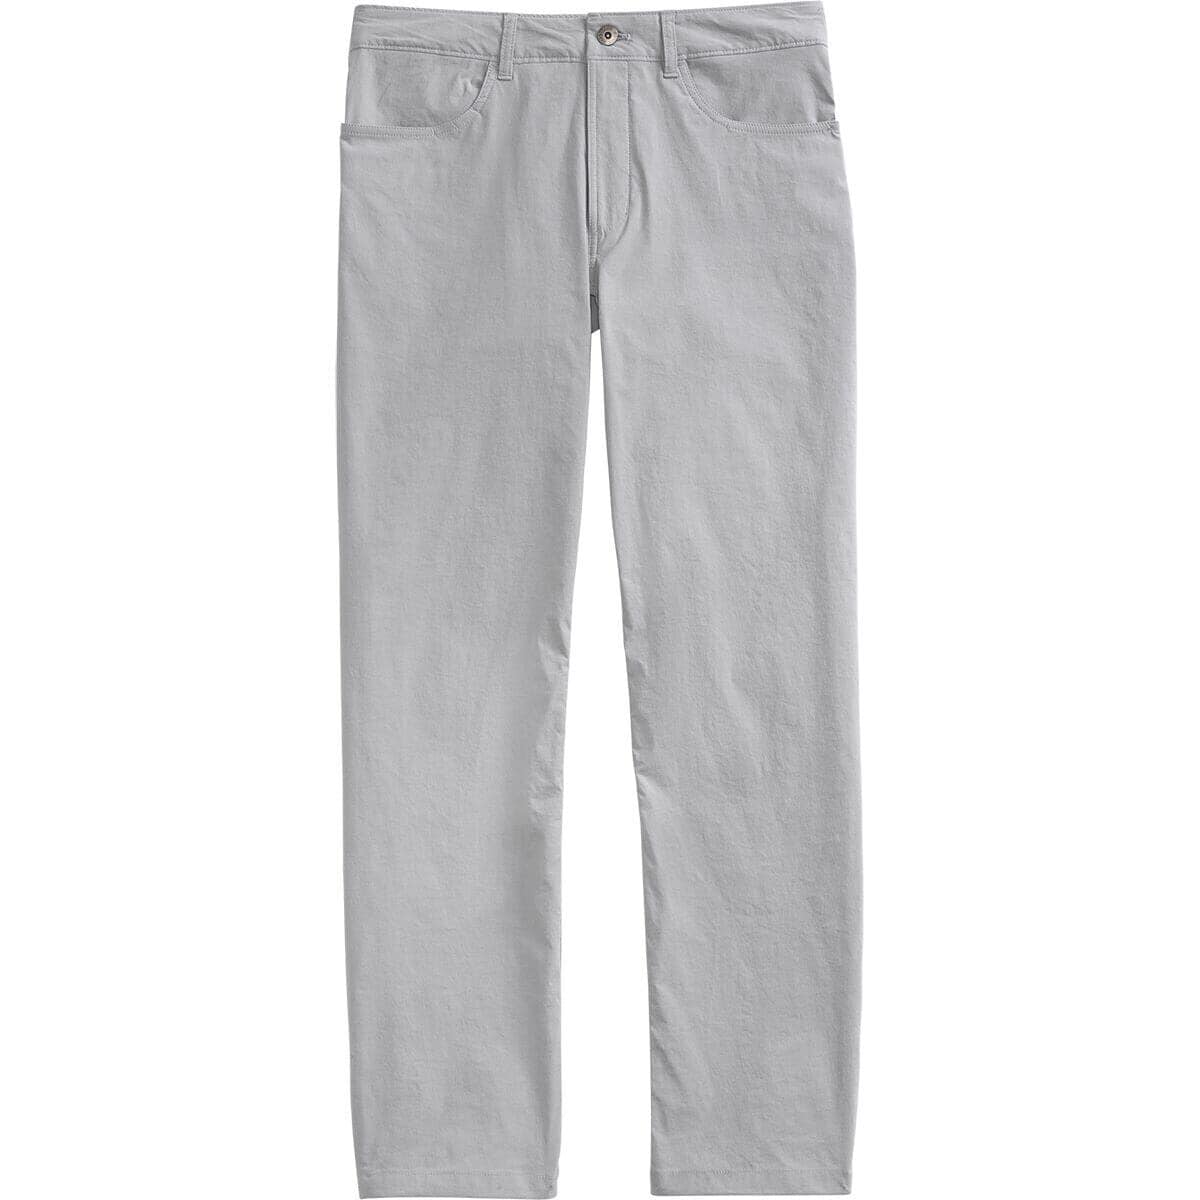 超安い品質超安い品質(取寄) ノースフェイス メンズ スプラグ 5ポケット パンツ メンズ The North Face Men Sprag 5-Pocket  Pant Men's Meld Grey ズボン・パンツ